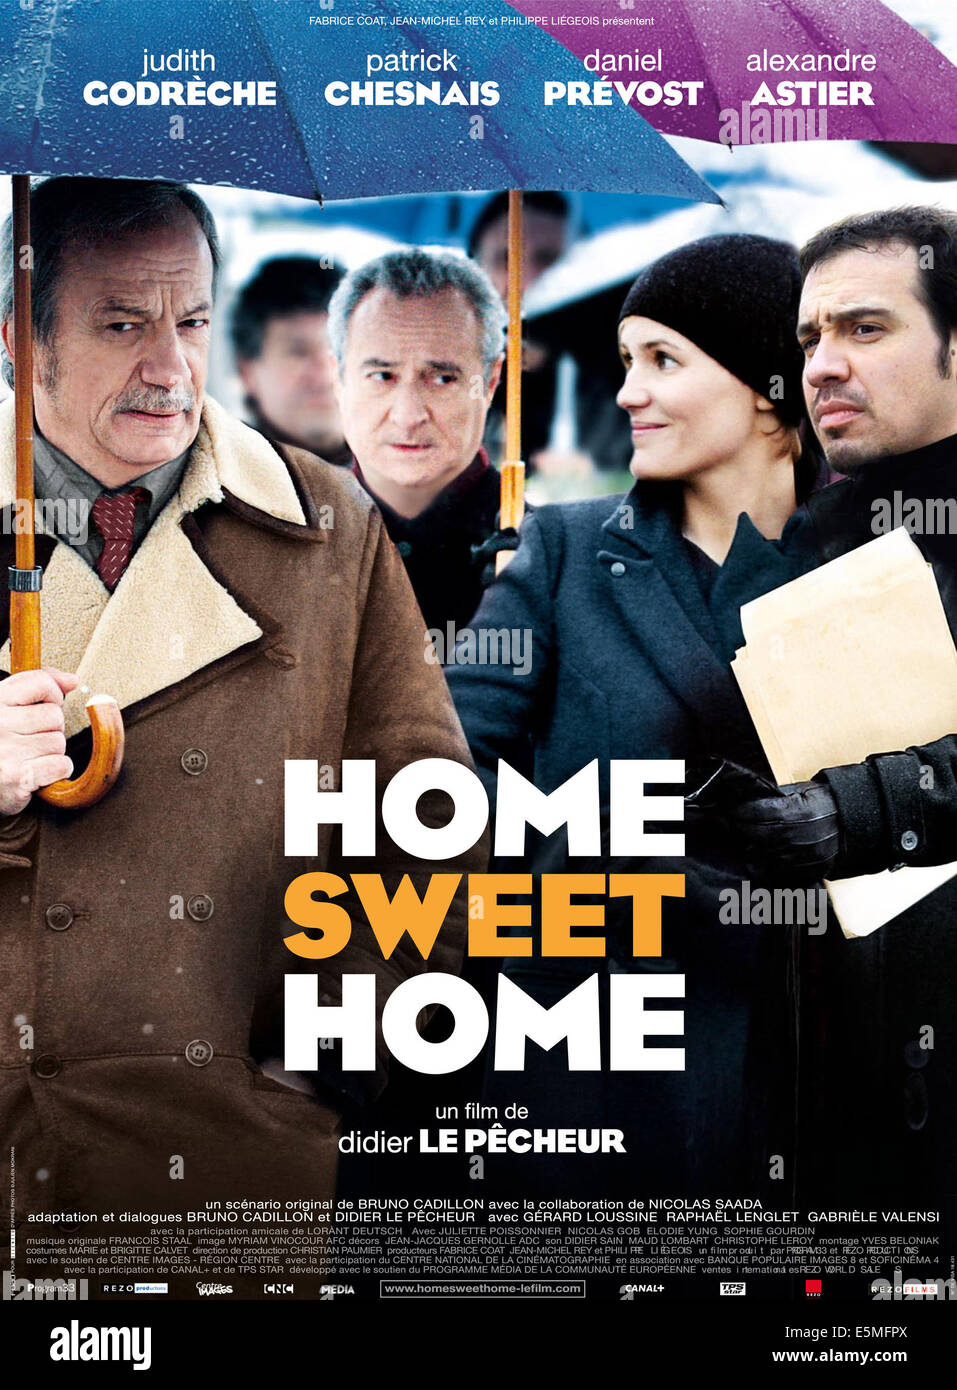 HOME SWEET HOME, French poster art, from left: Patrick Chesnais, Daniel Prevost, Judith Godreche, Alexandre Astier, 2008. ©Rezo Stock Photo